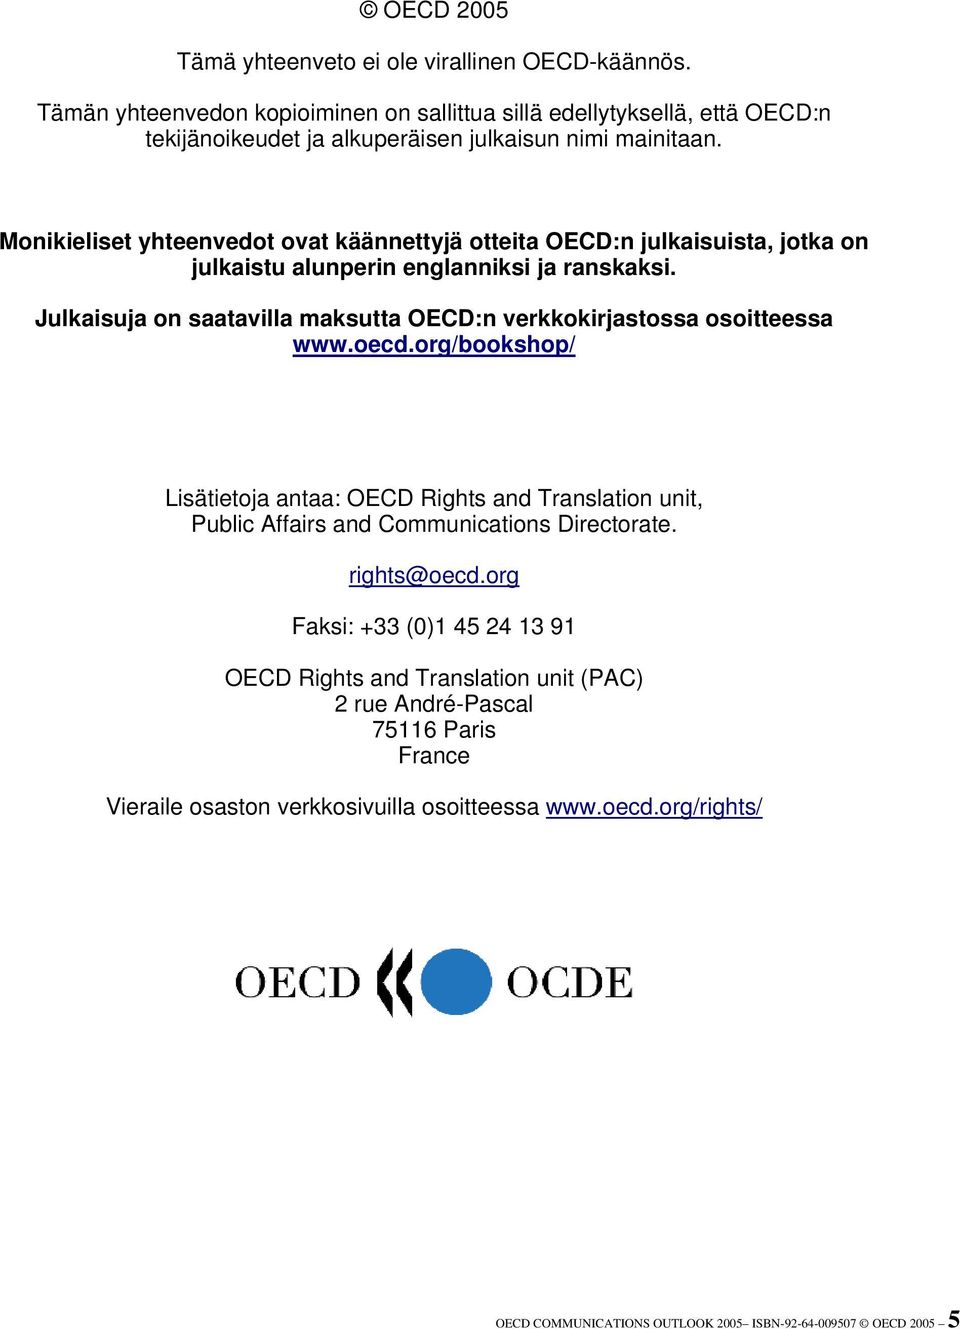 Monikieliset yhteenvedot ovat käännettyjä otteita OECD:n julkaisuista, jotka on julkaistu alunperin englanniksi ja ranskaksi.